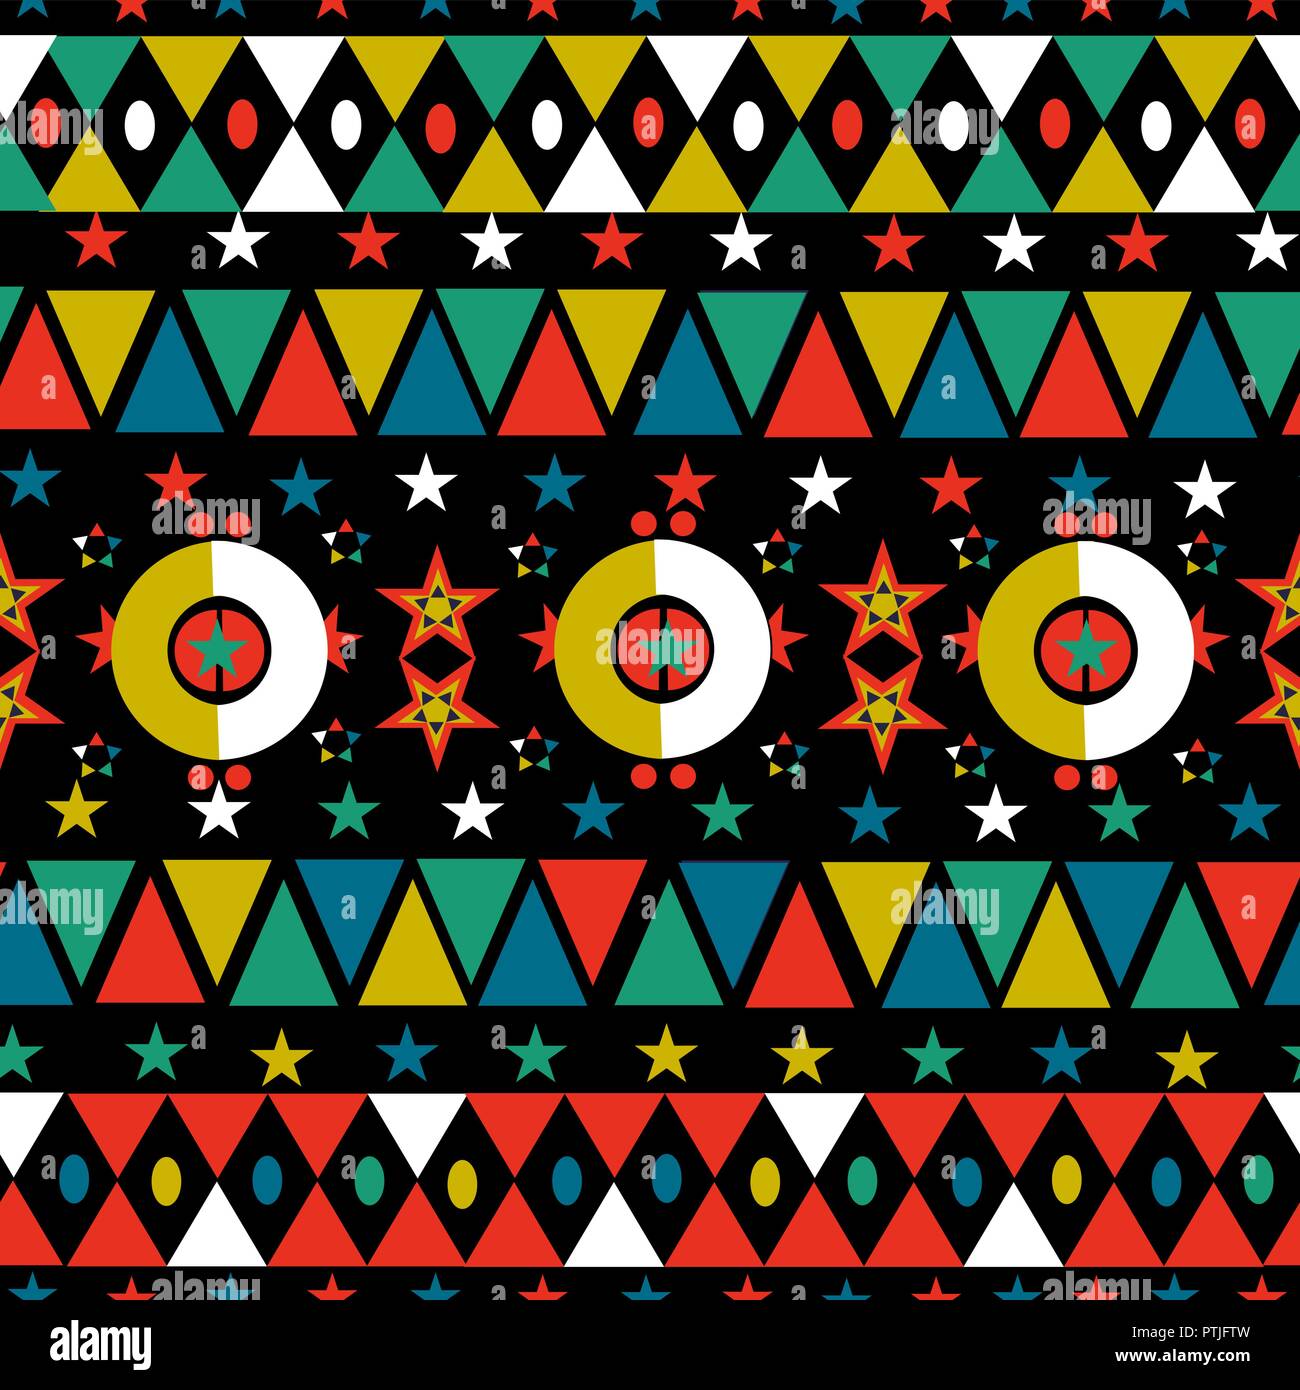 Saison de Noël rétro modèle homogène dans bohemian style folklorique avec des formes géométriques colorées décoration étoile et arrière-plan. Vecteur EPS10. Illustration de Vecteur